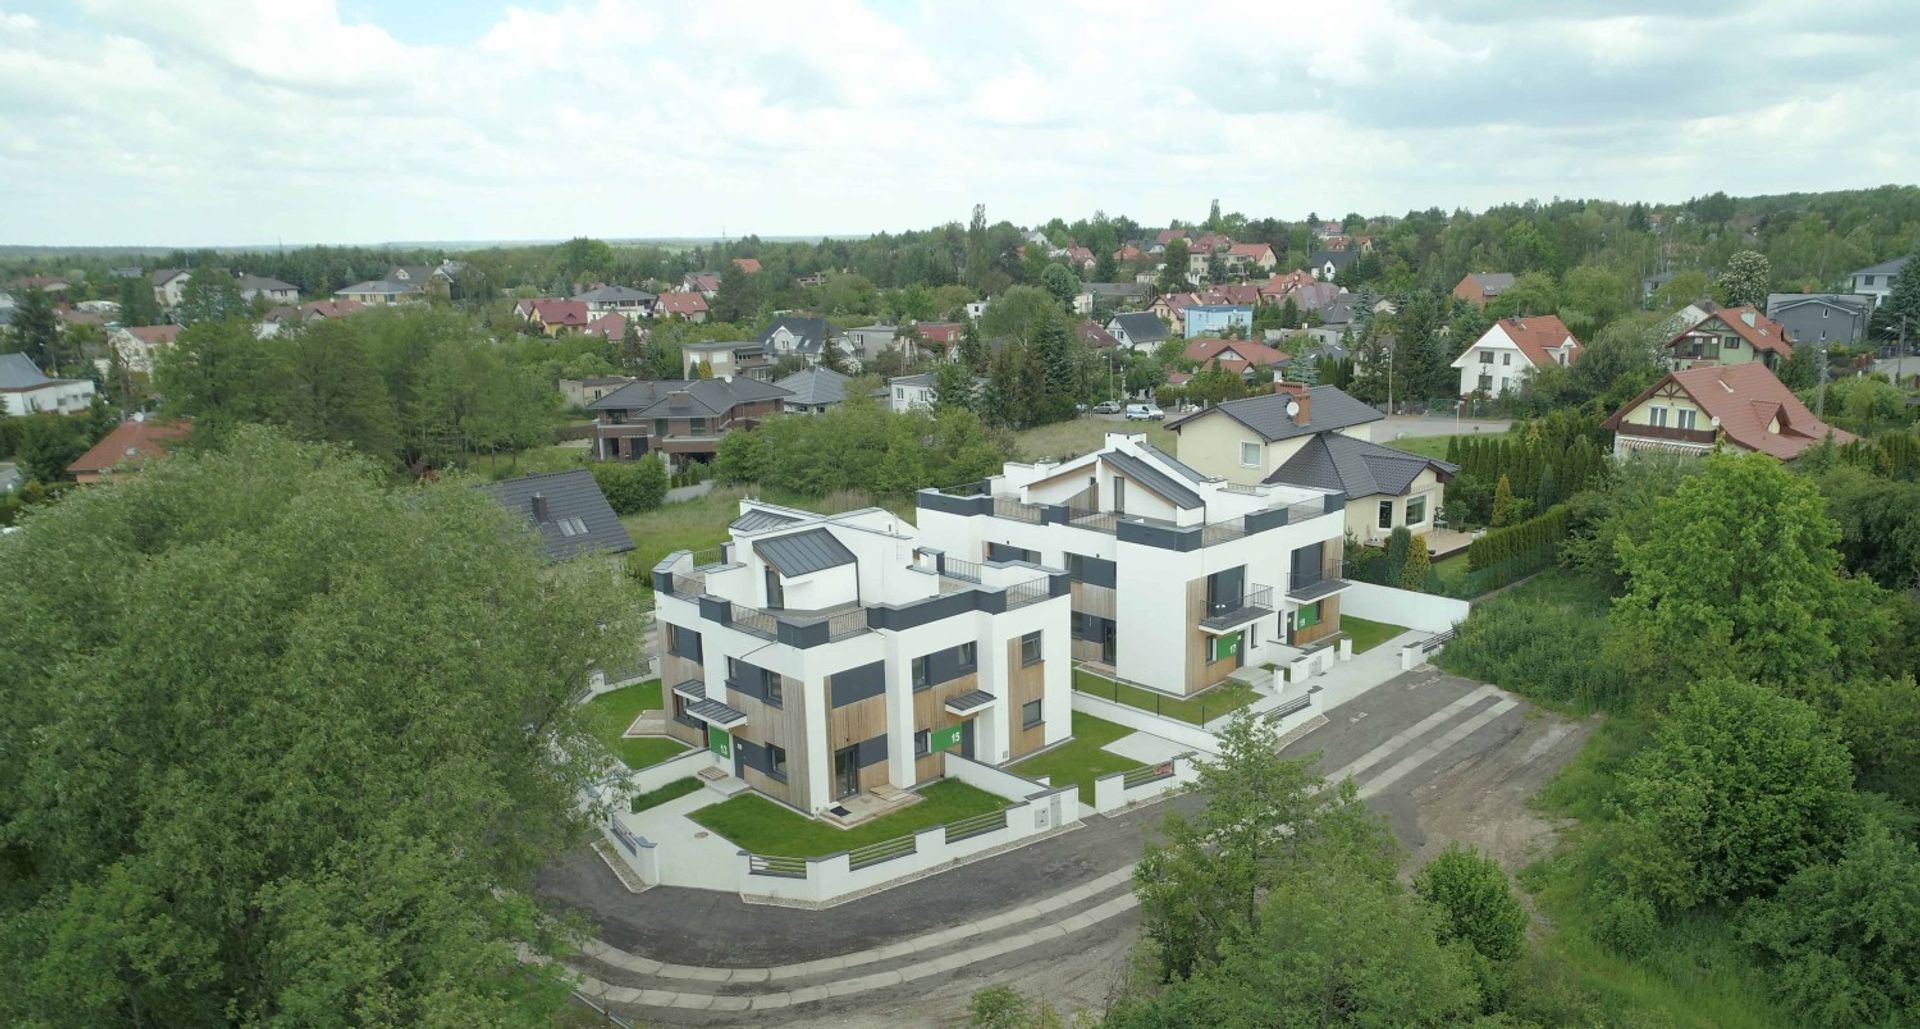  Mieszkania w celach inwestycyjnych na poznańskim rynku